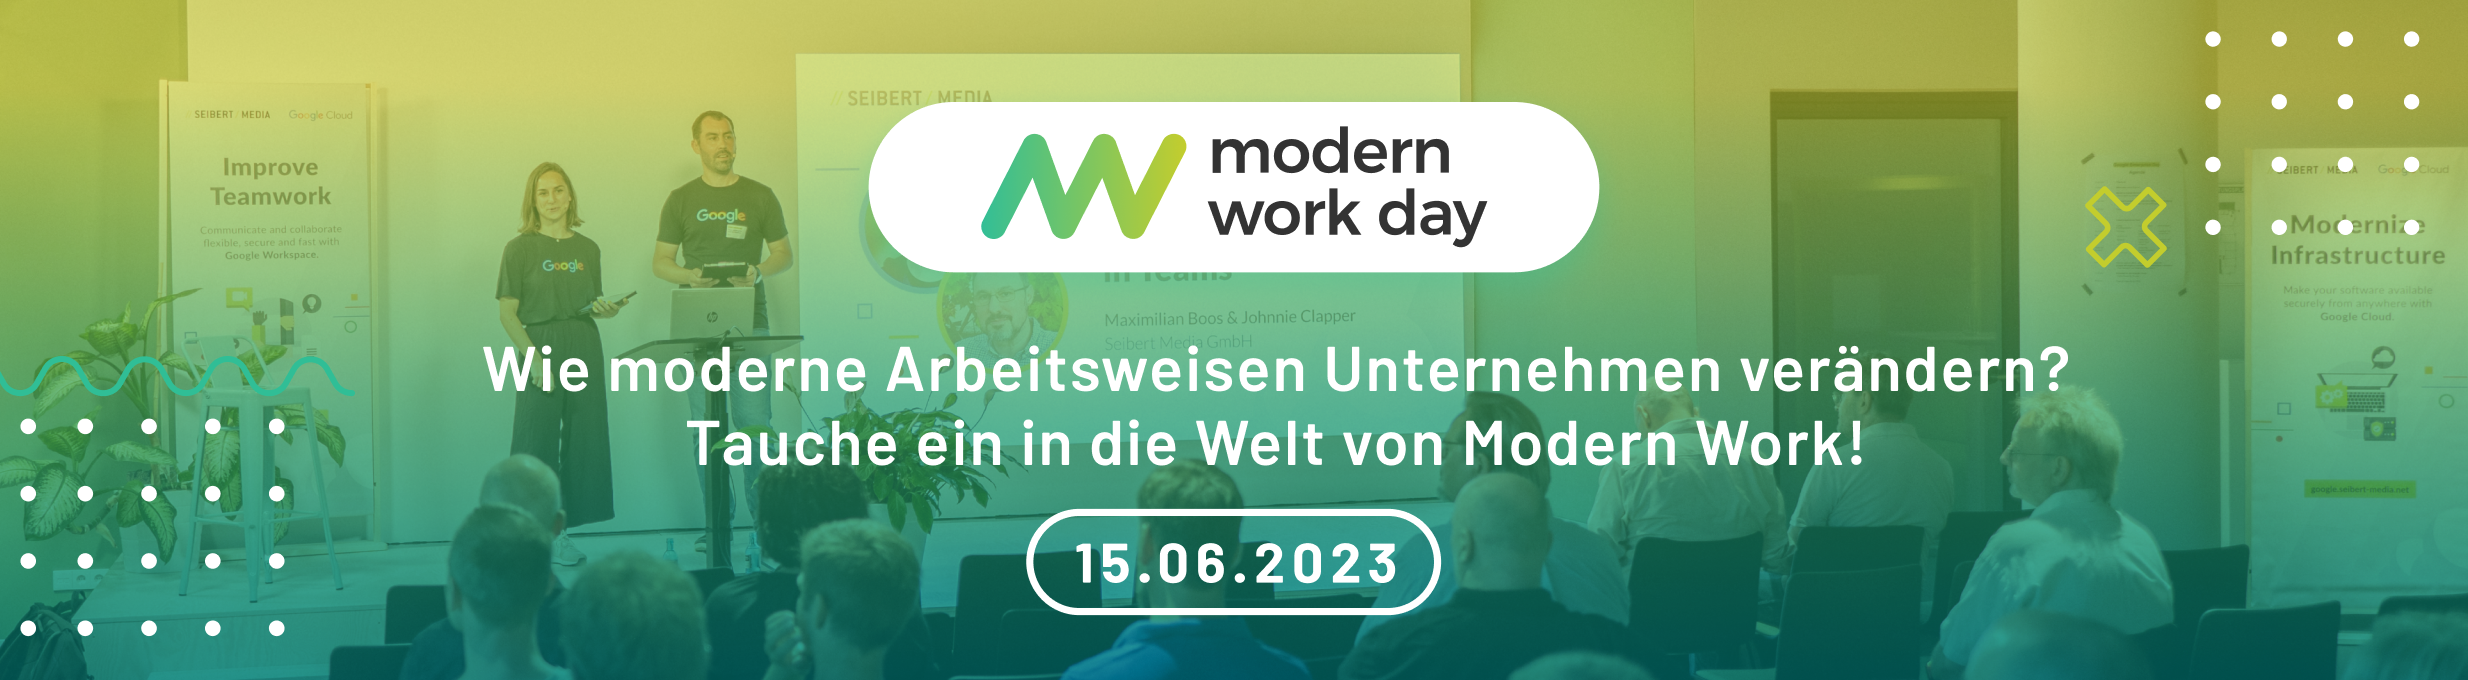 Premiere: Modern Work Day bei Seibert Media alles rund um New Work, Social Intranets und moderne Arbeitstools